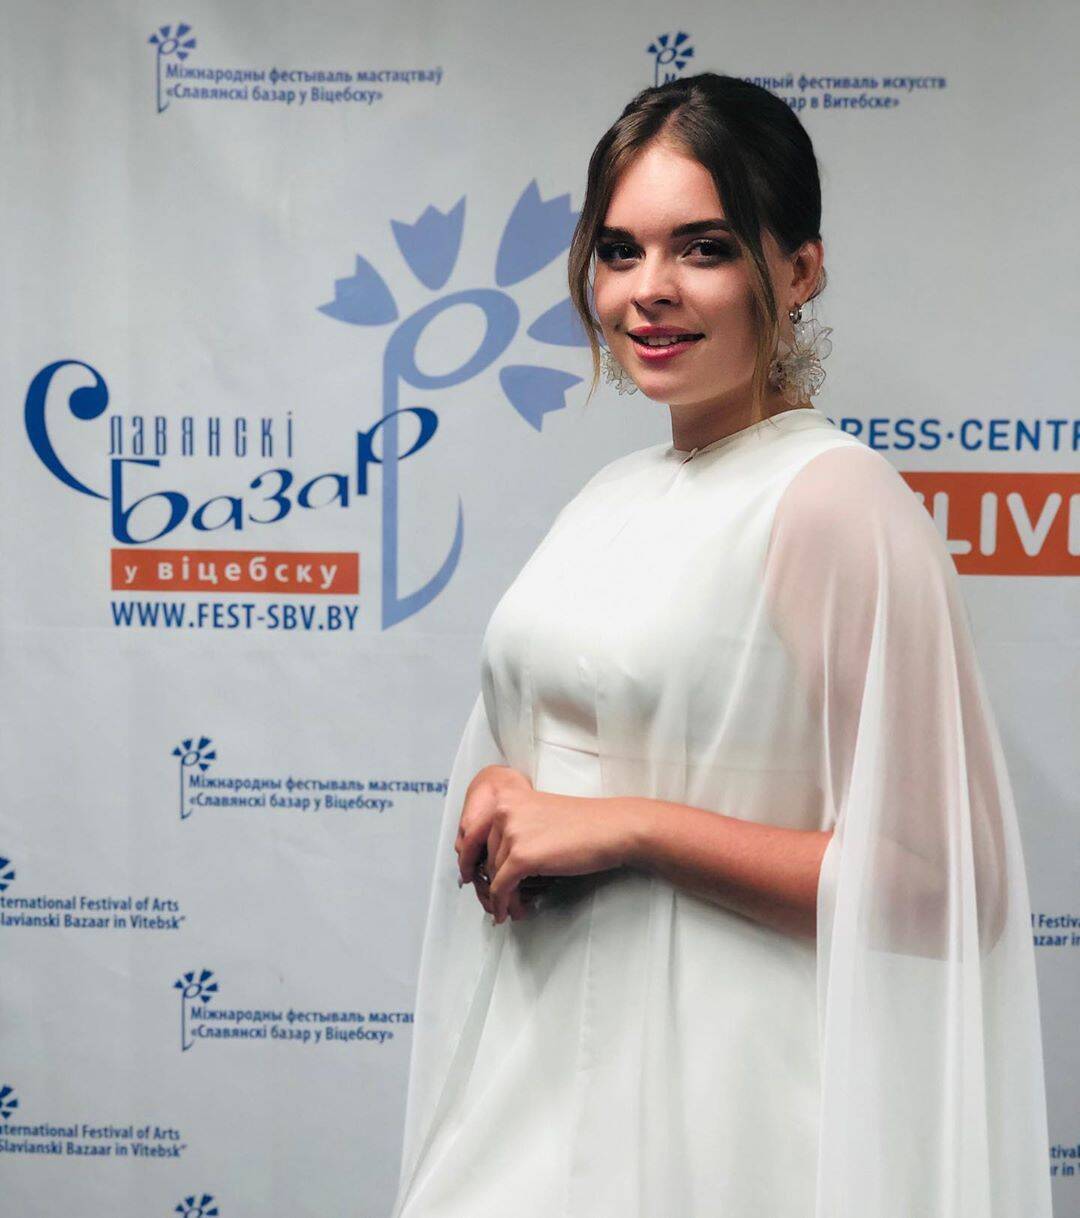 Еліна Іващенко перемогла на конкурсі "Слов'янський базар" (Instagram Еліни Іващенко)